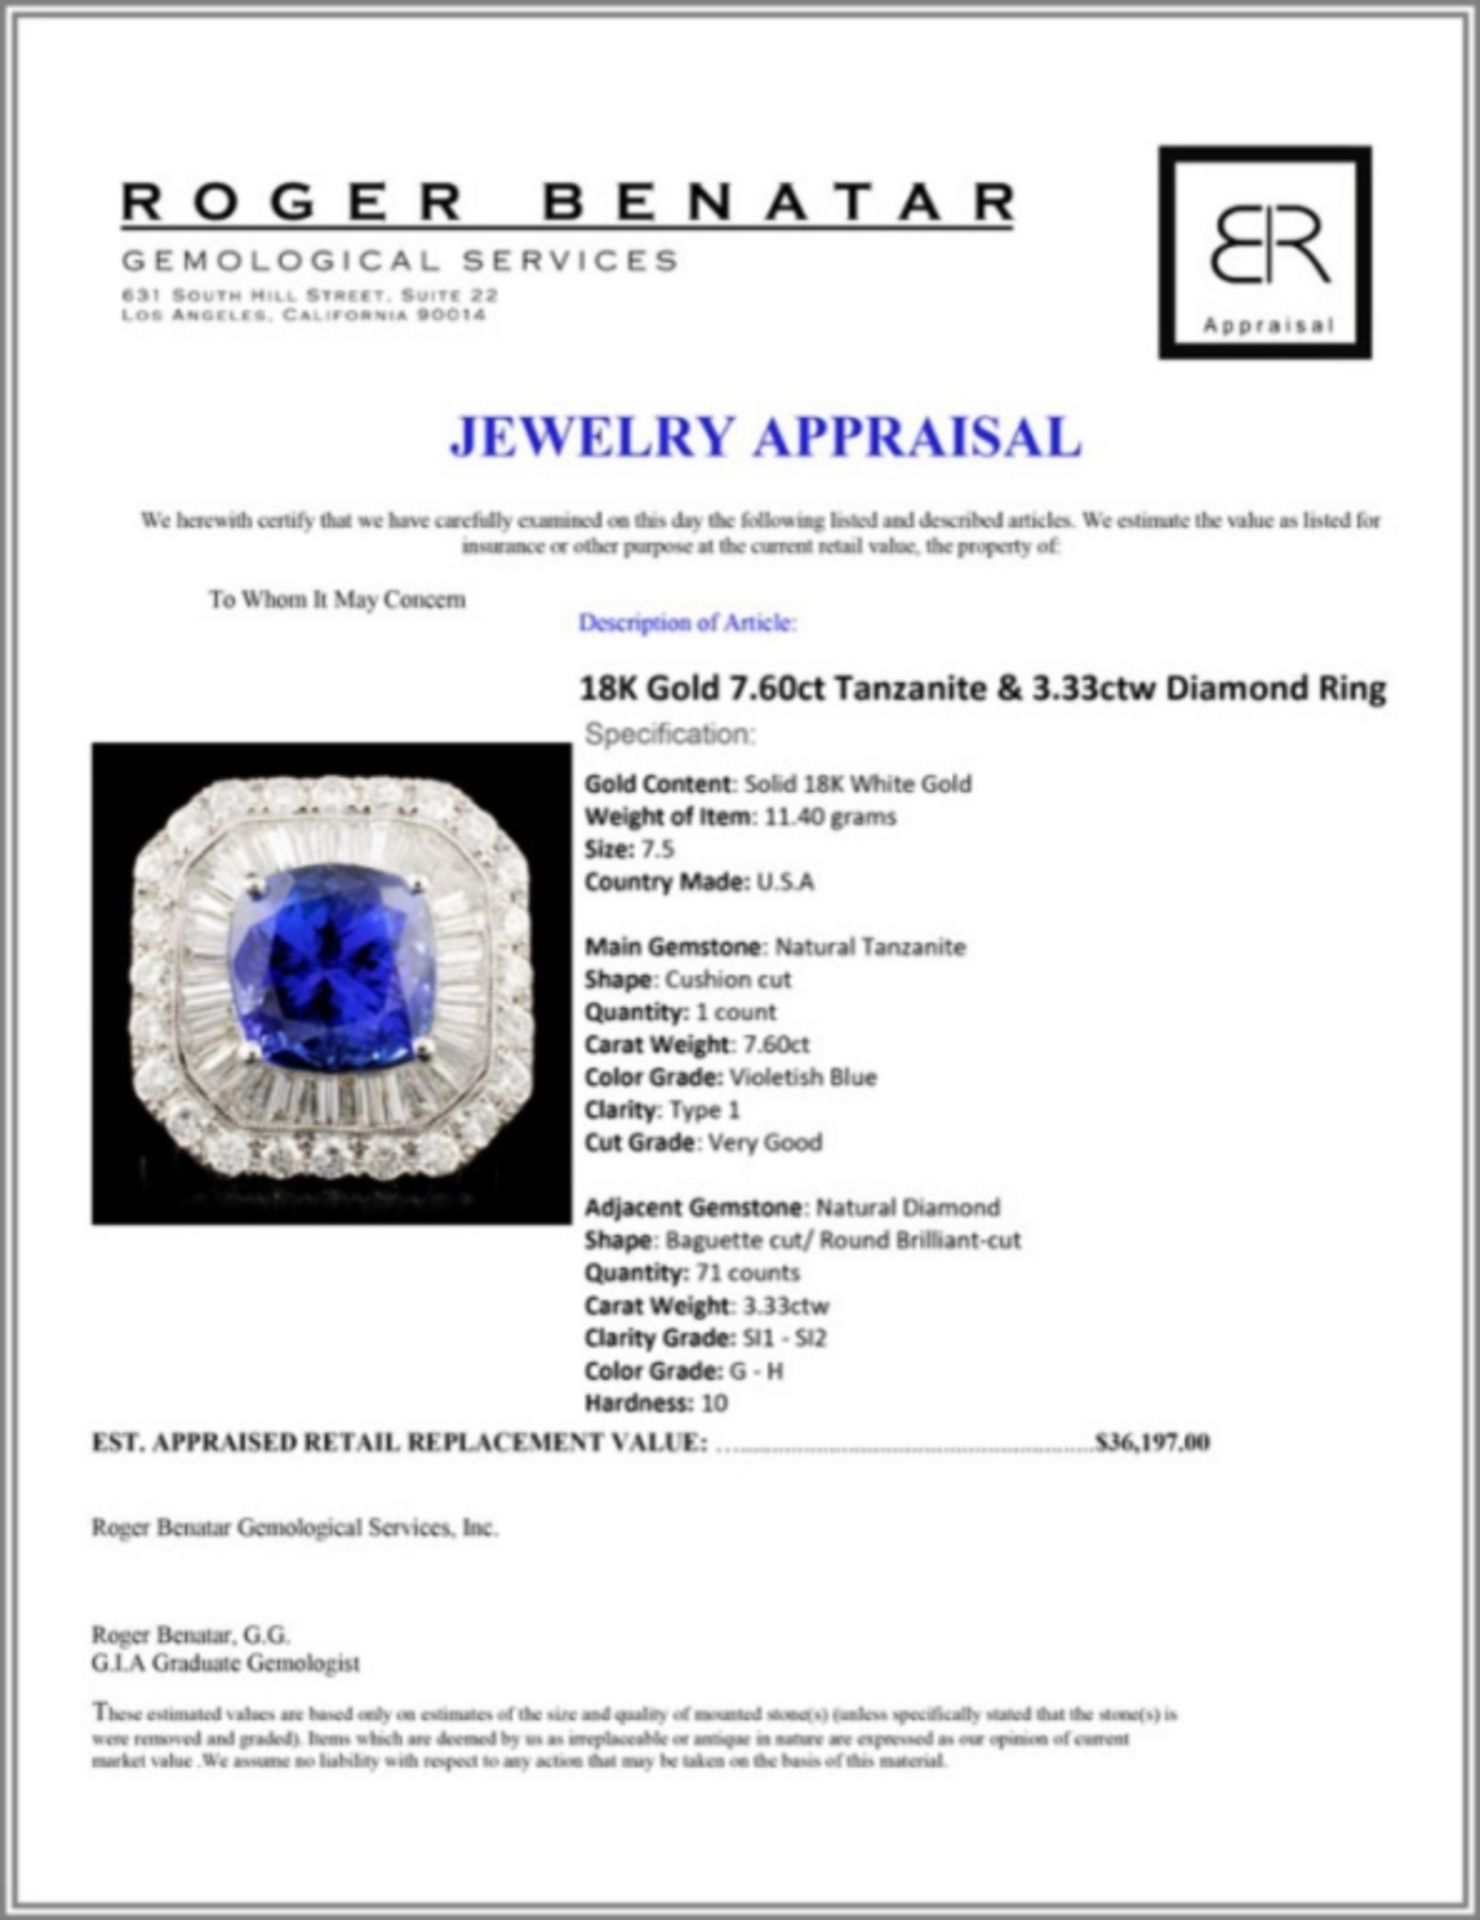 18K Gold 7.60ct Tanzanite & 3.33ctw Diamond Ring - Image 5 of 5